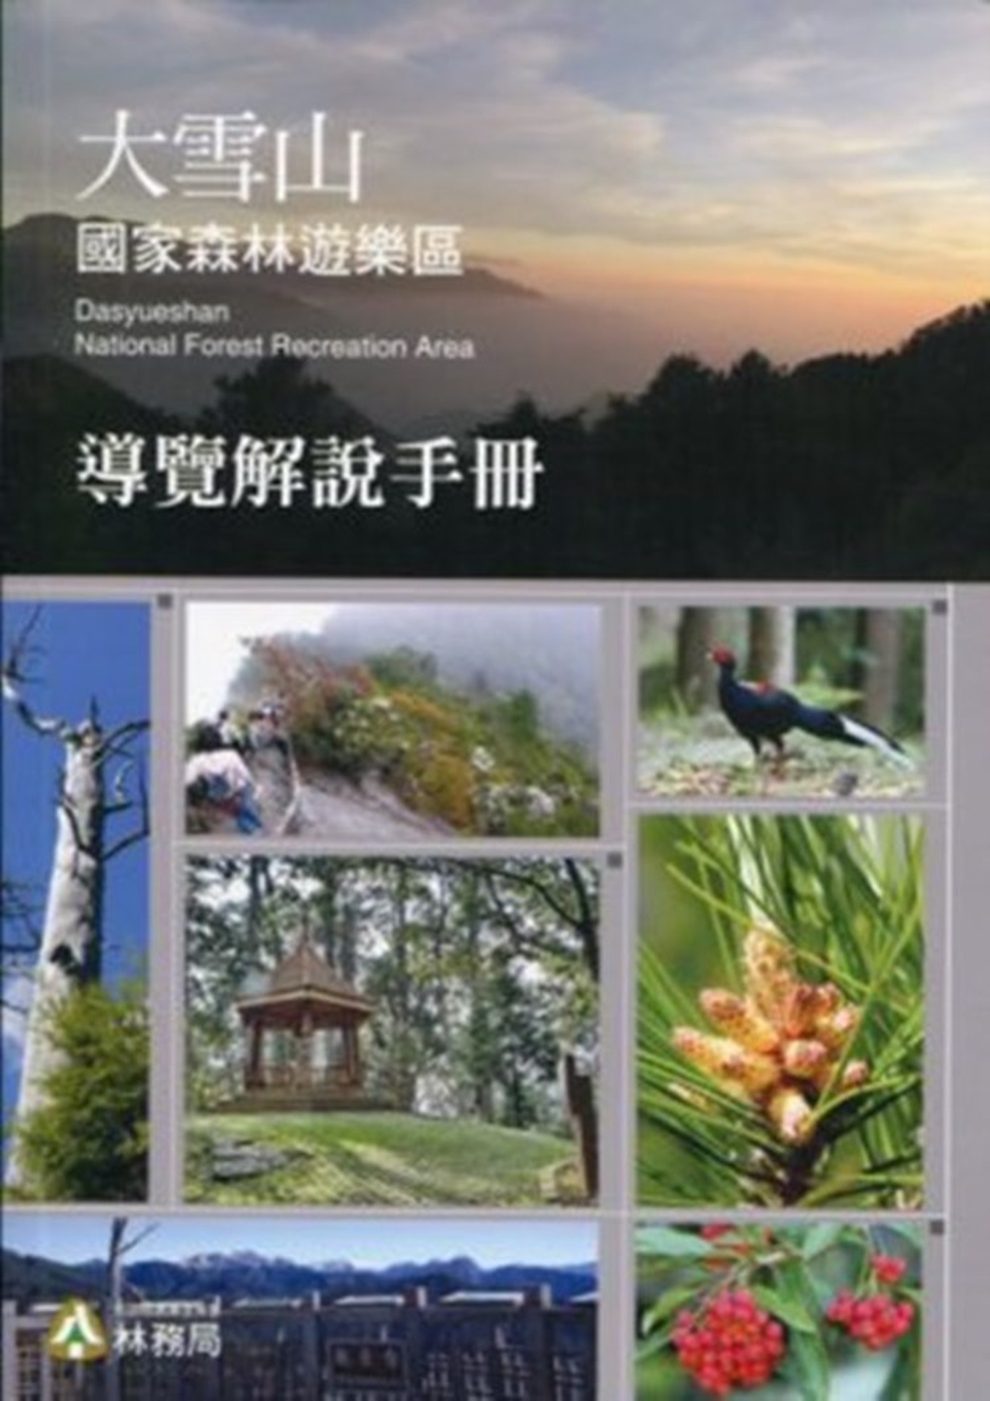 大雪山國家森林遊樂區導覽解說手冊